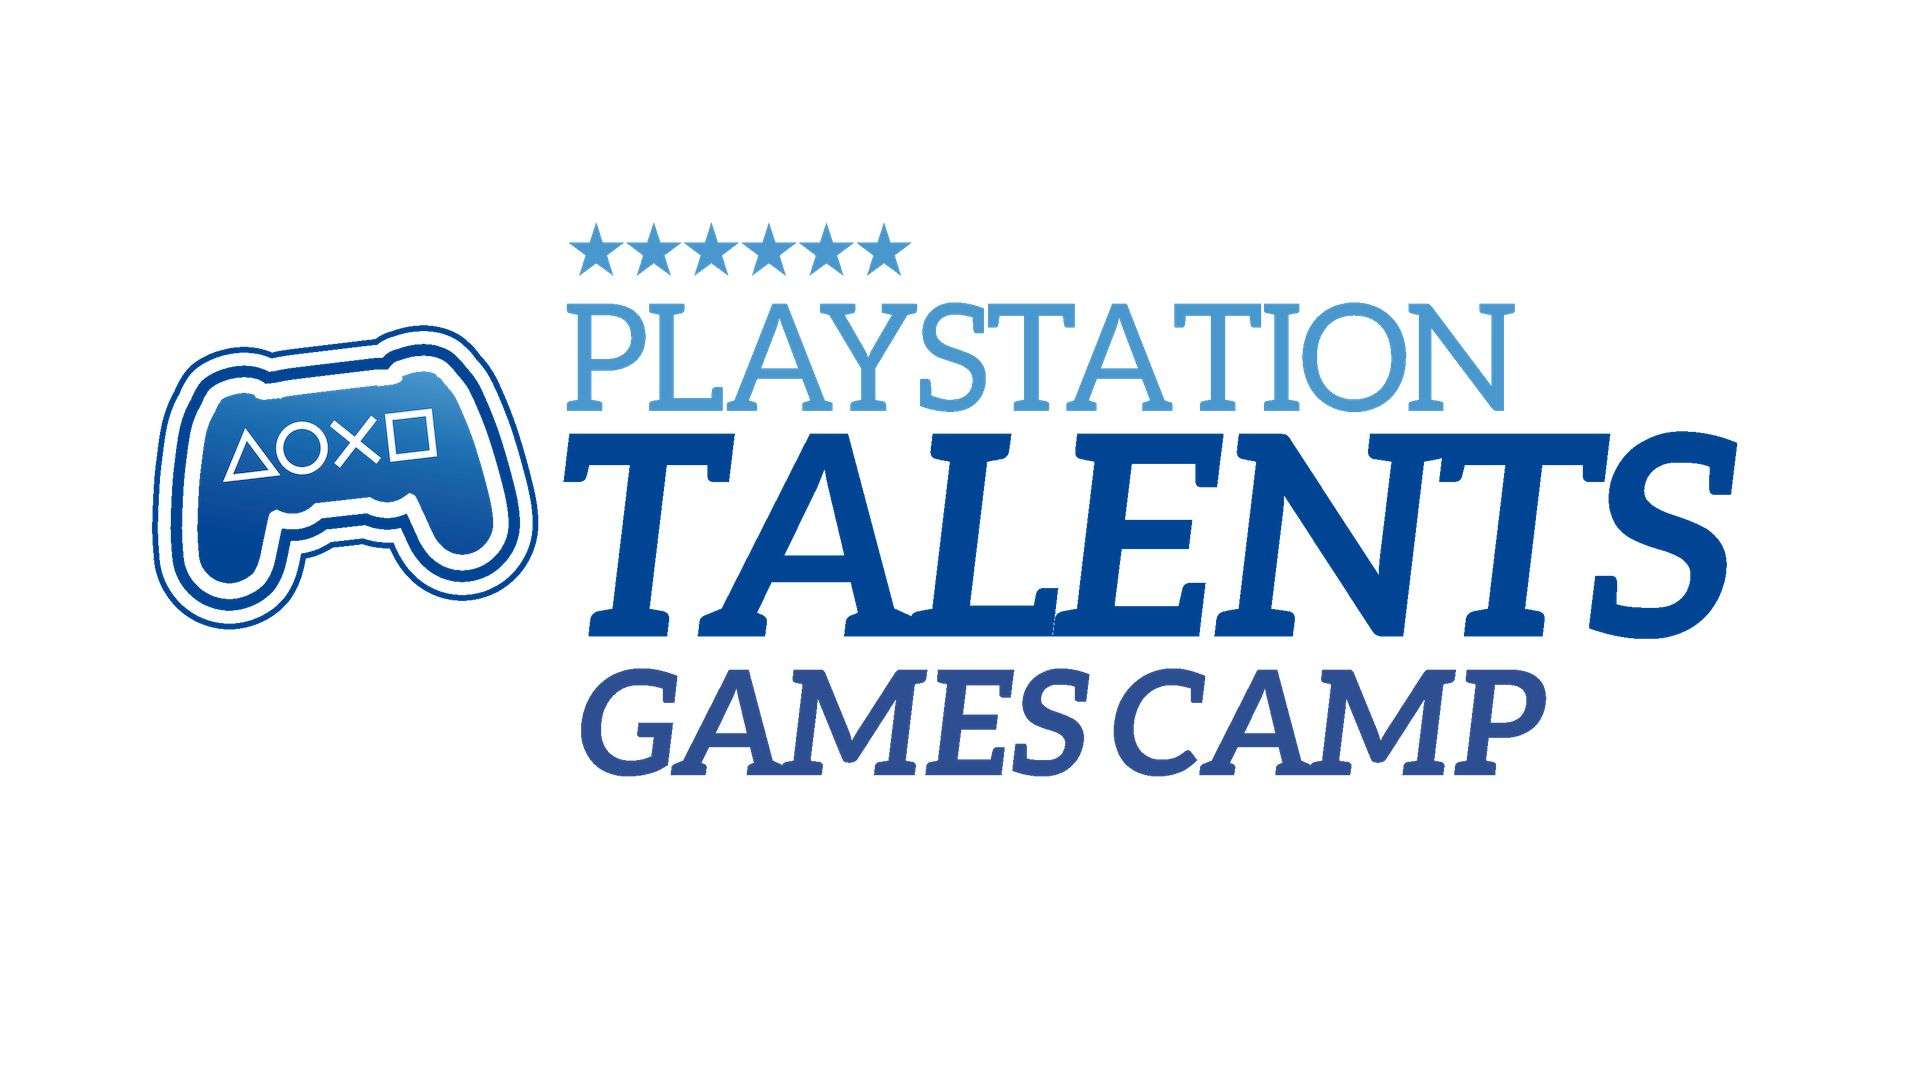 El programa Playstation Talents continua buscando nuevos proyectos hasta el 31 de diciembre